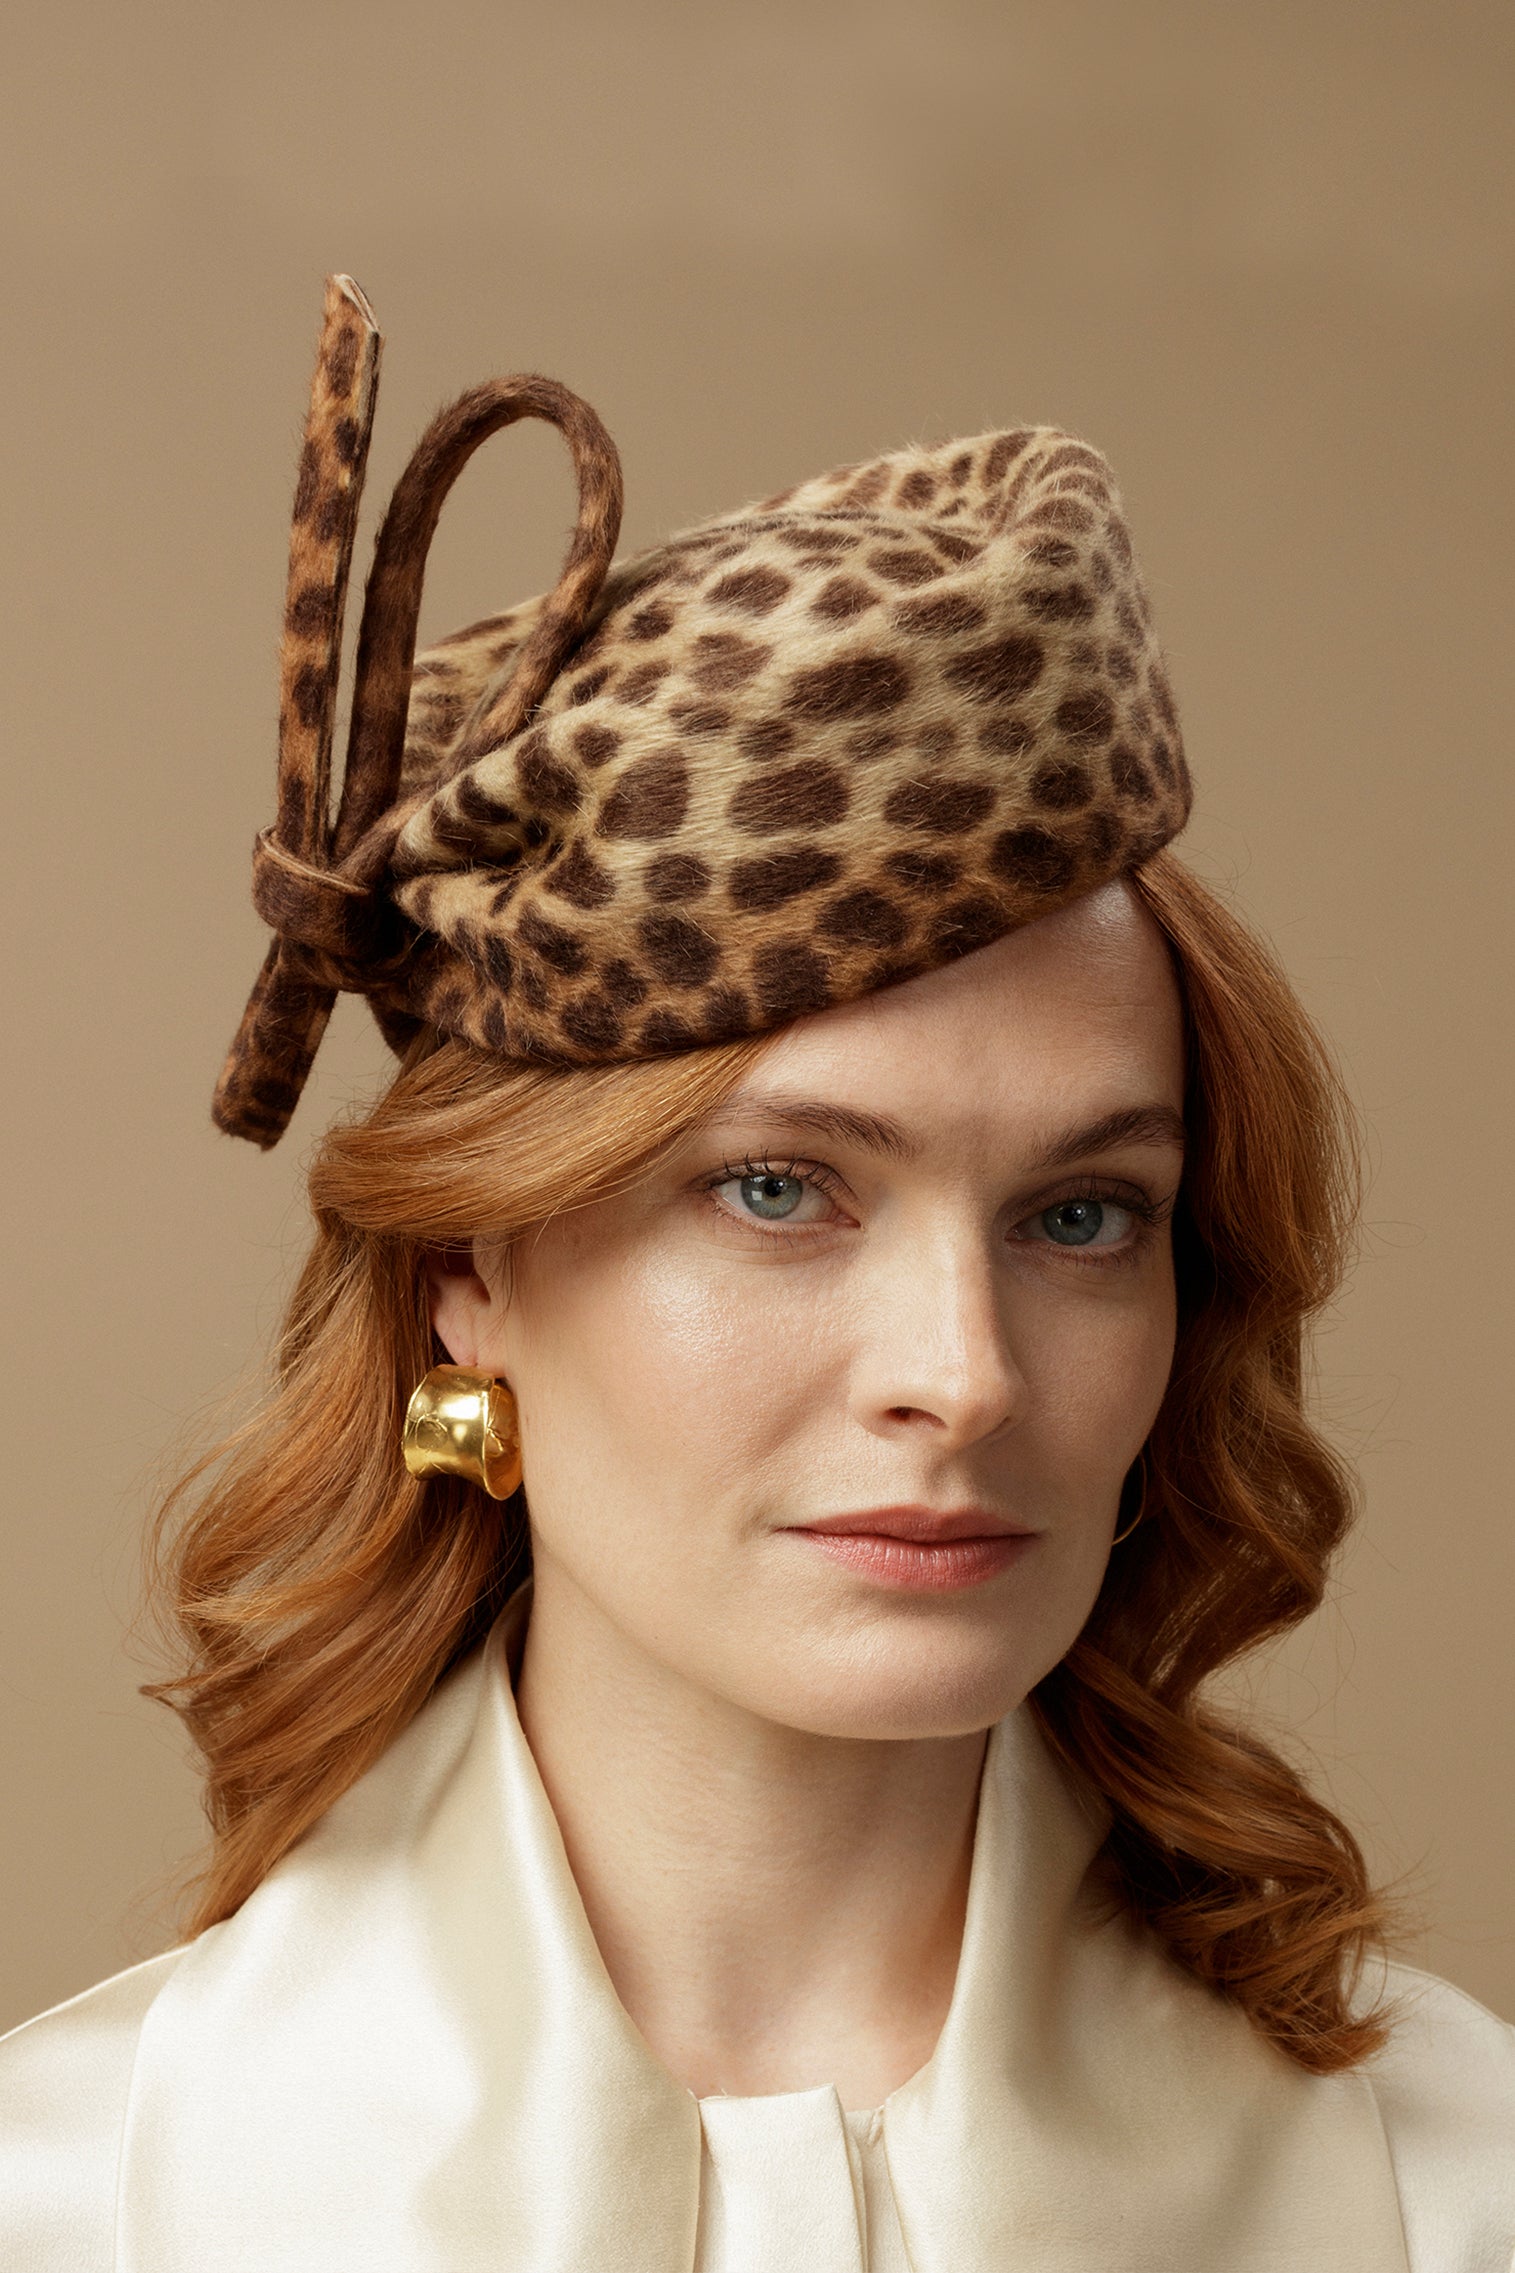 Leopard Mayfair Pillbox Hat - Women’s Hats - Lock & Co. Hatters London UK